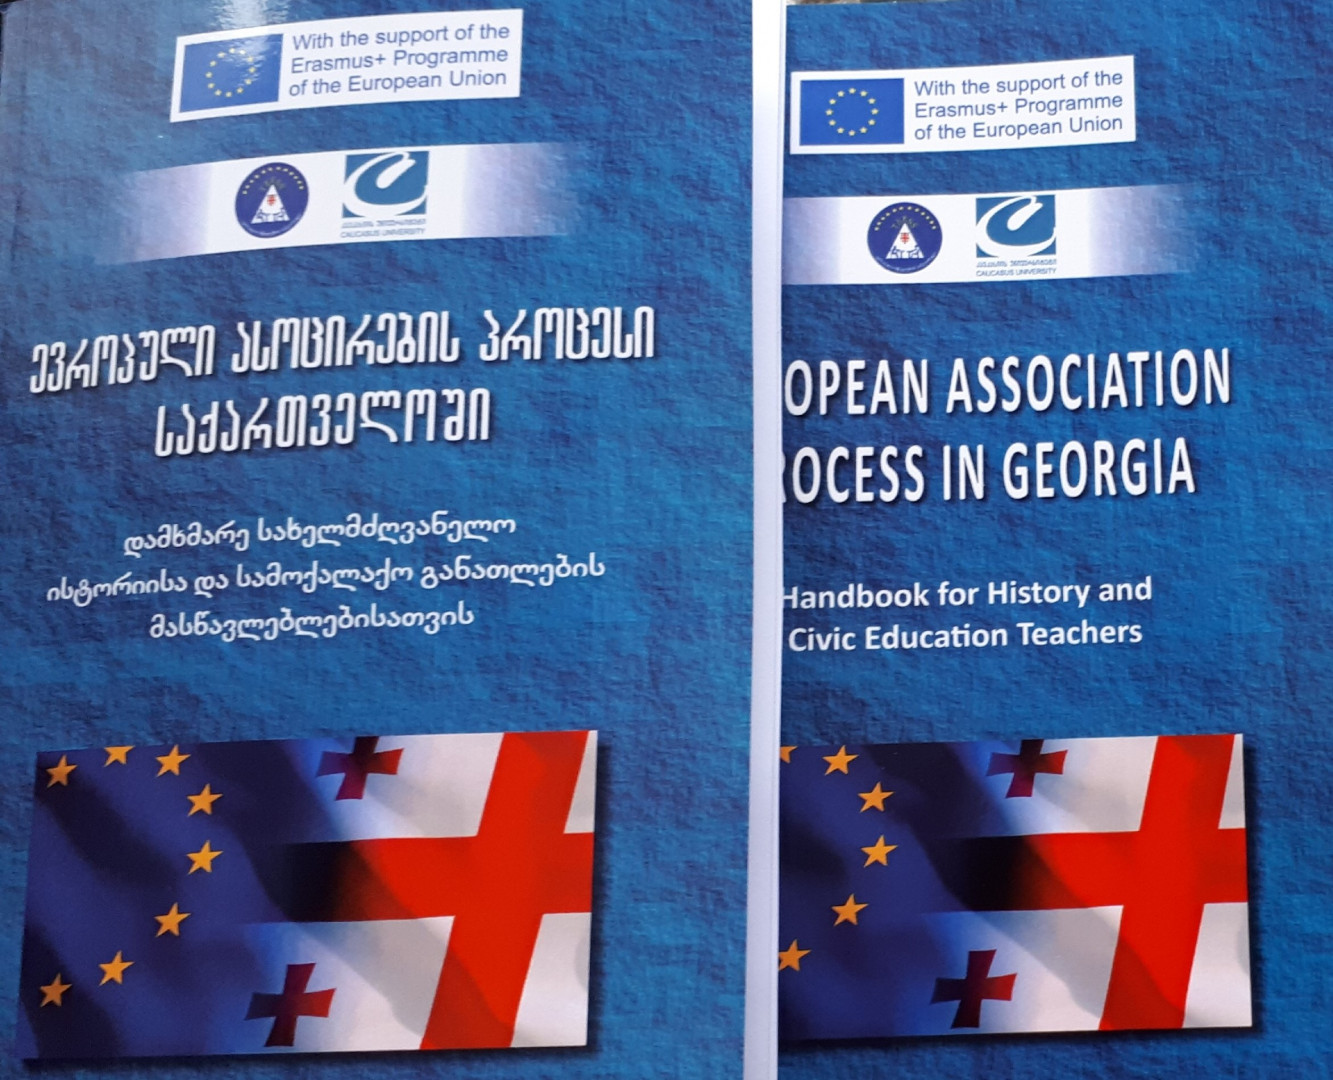  ევროპული ასოცირების პროცესი საქართველოში - დამხმარე სახელმძღვანელო ისტორიისა და სამოქალაქო განათლების მასწავლებელთათვის